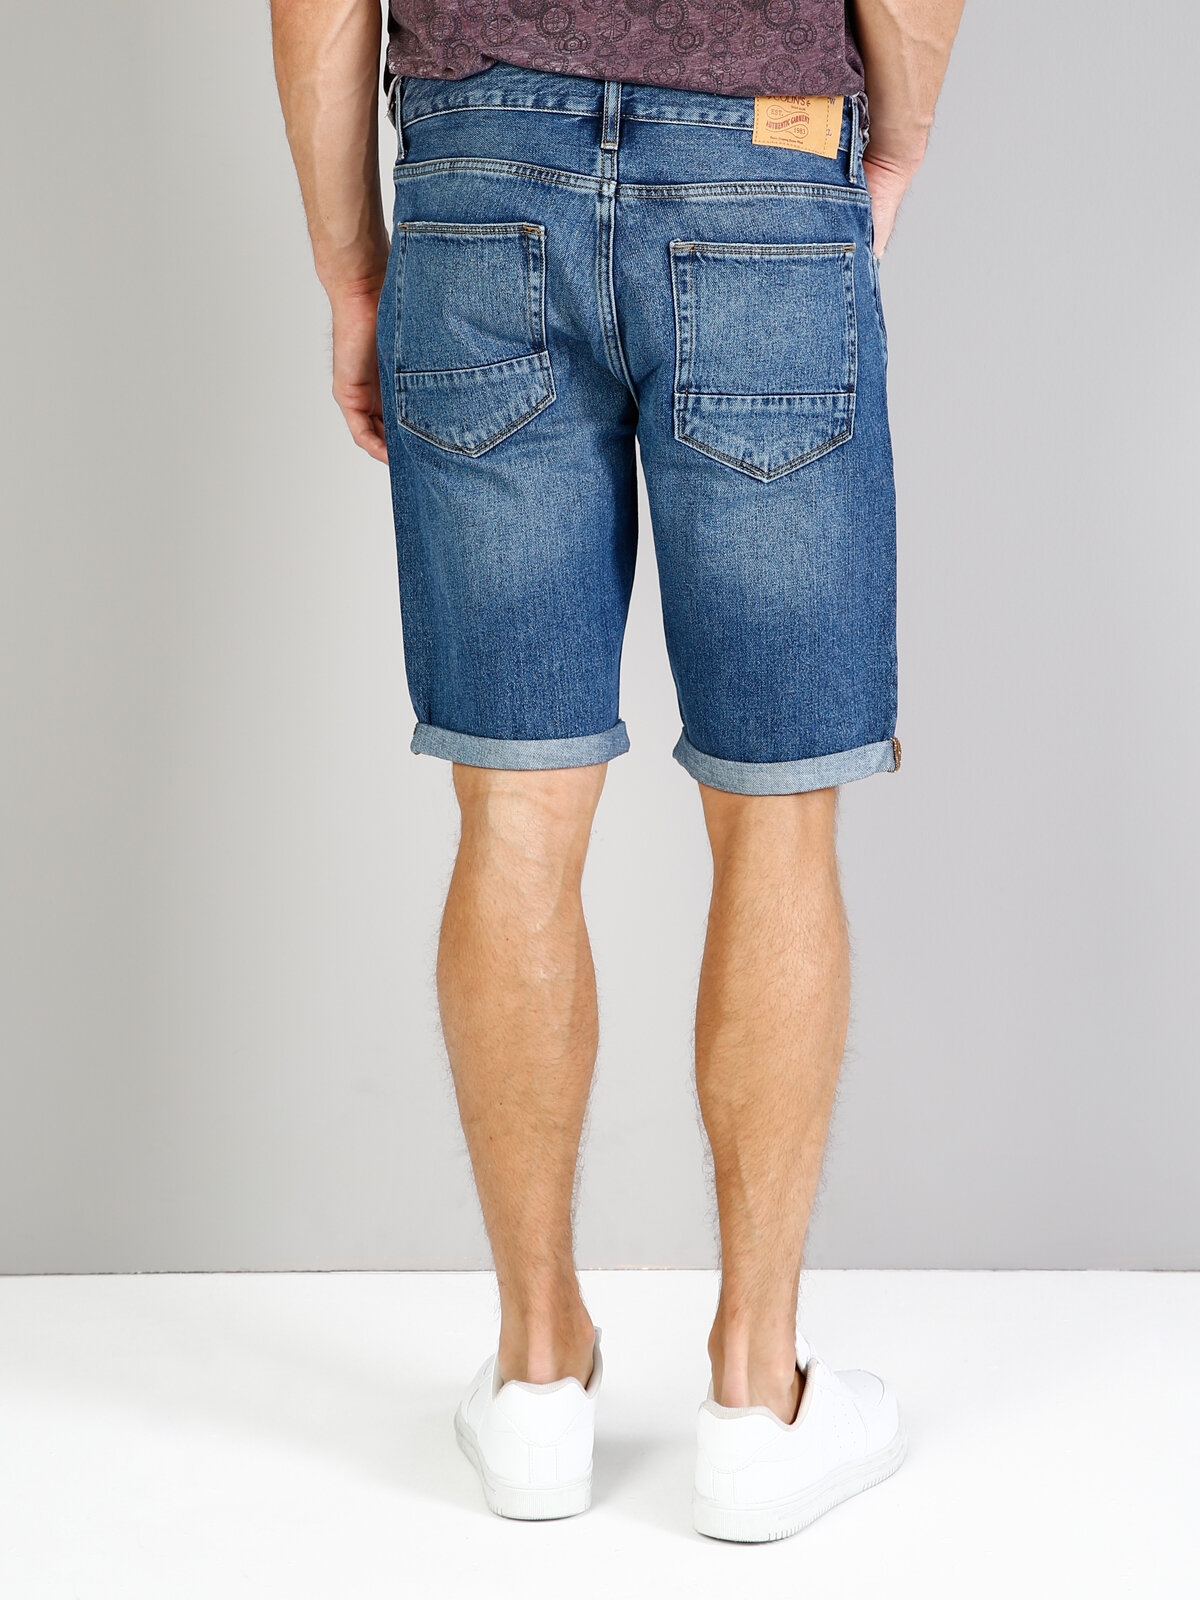 Afișați detalii pentru Short / Pantaloni Scurti De Barbati Denim Straight Fit 